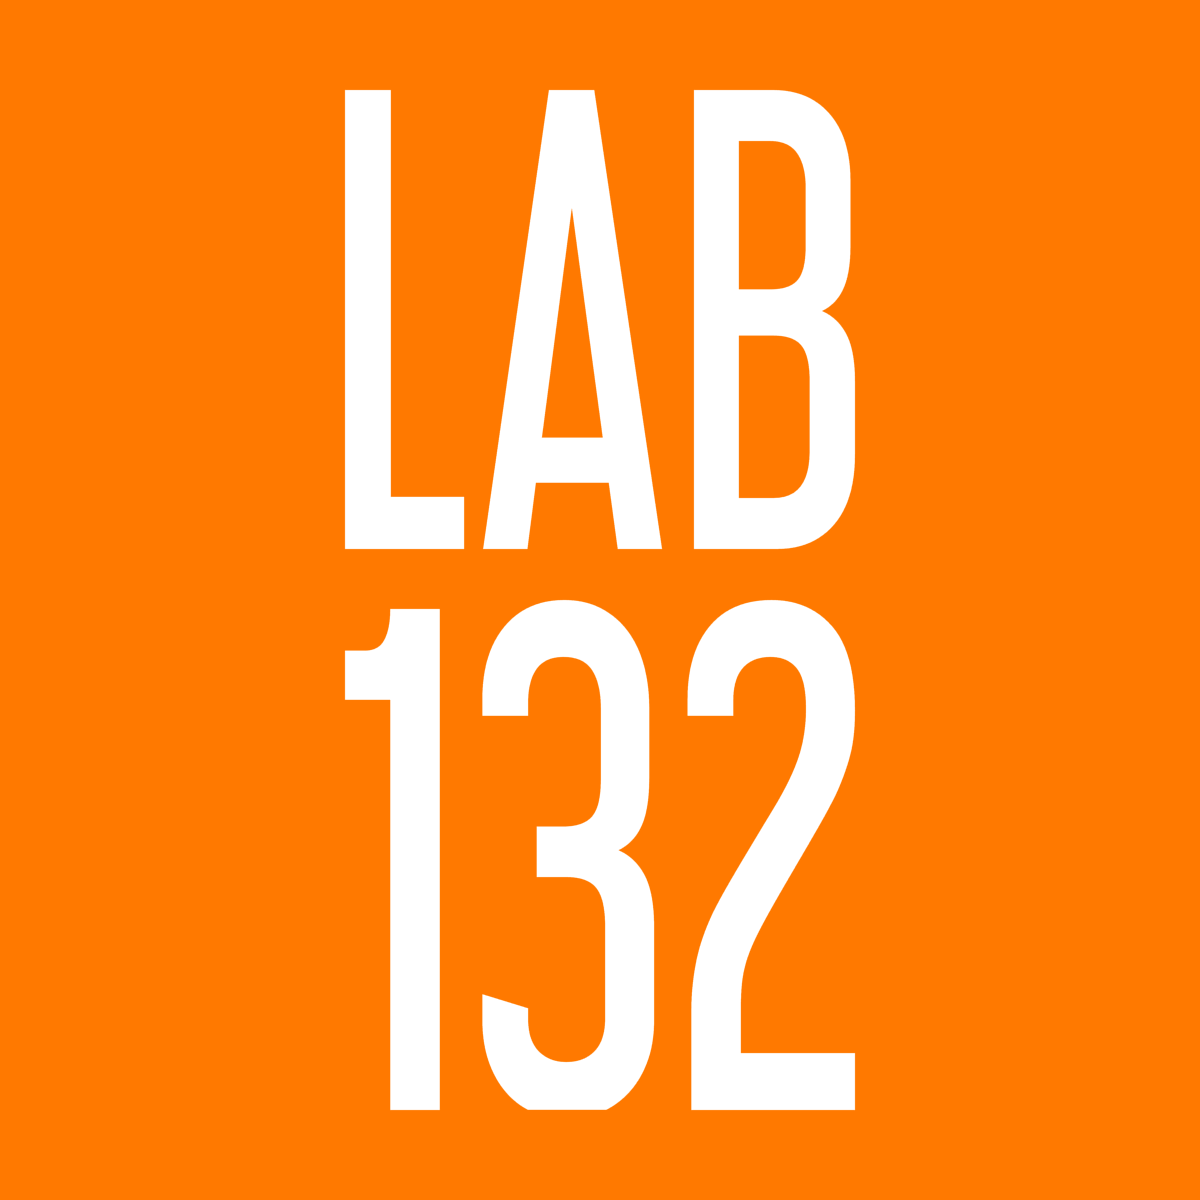 Lab132